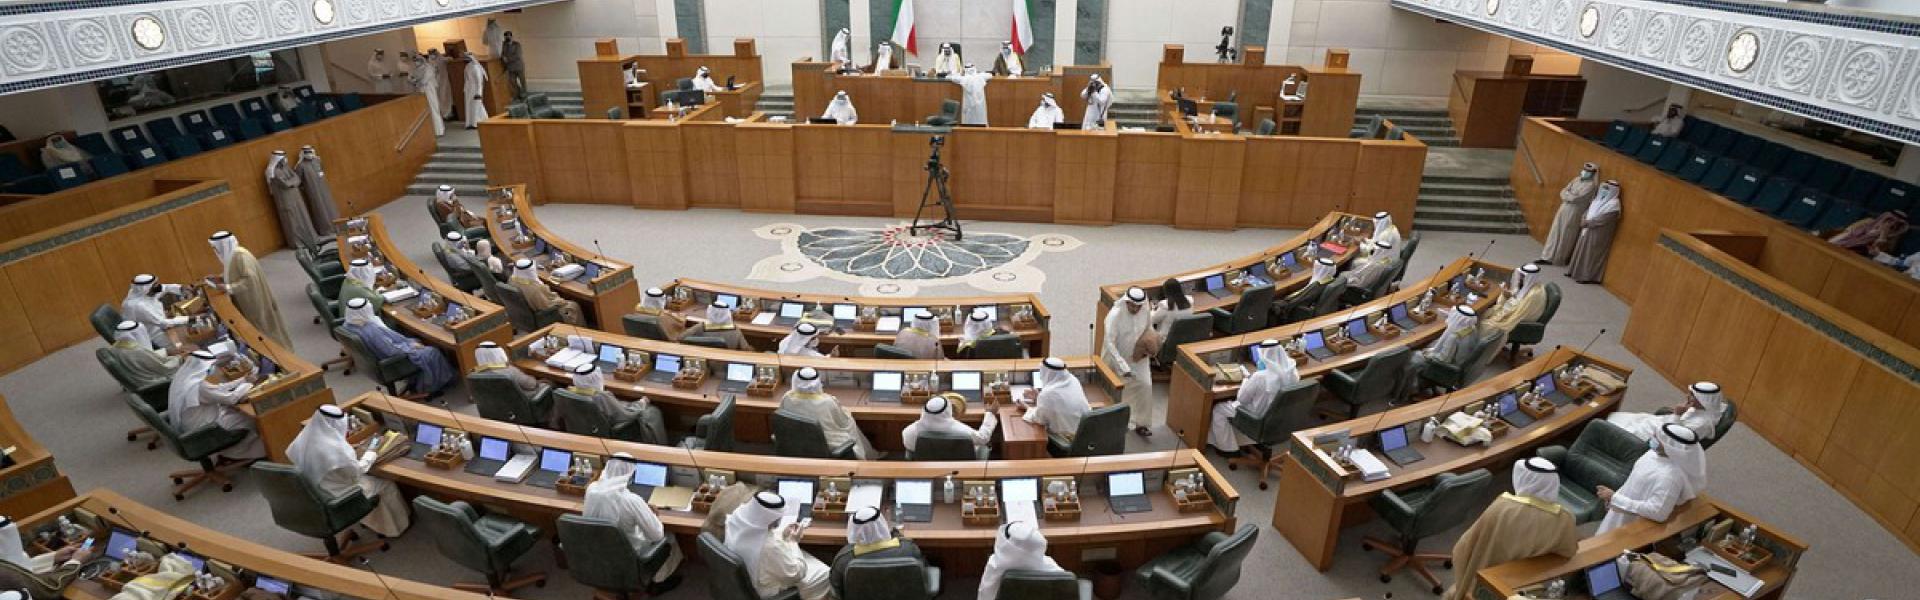 الكويت تتقلب بين أزمة سياسية وأخرى